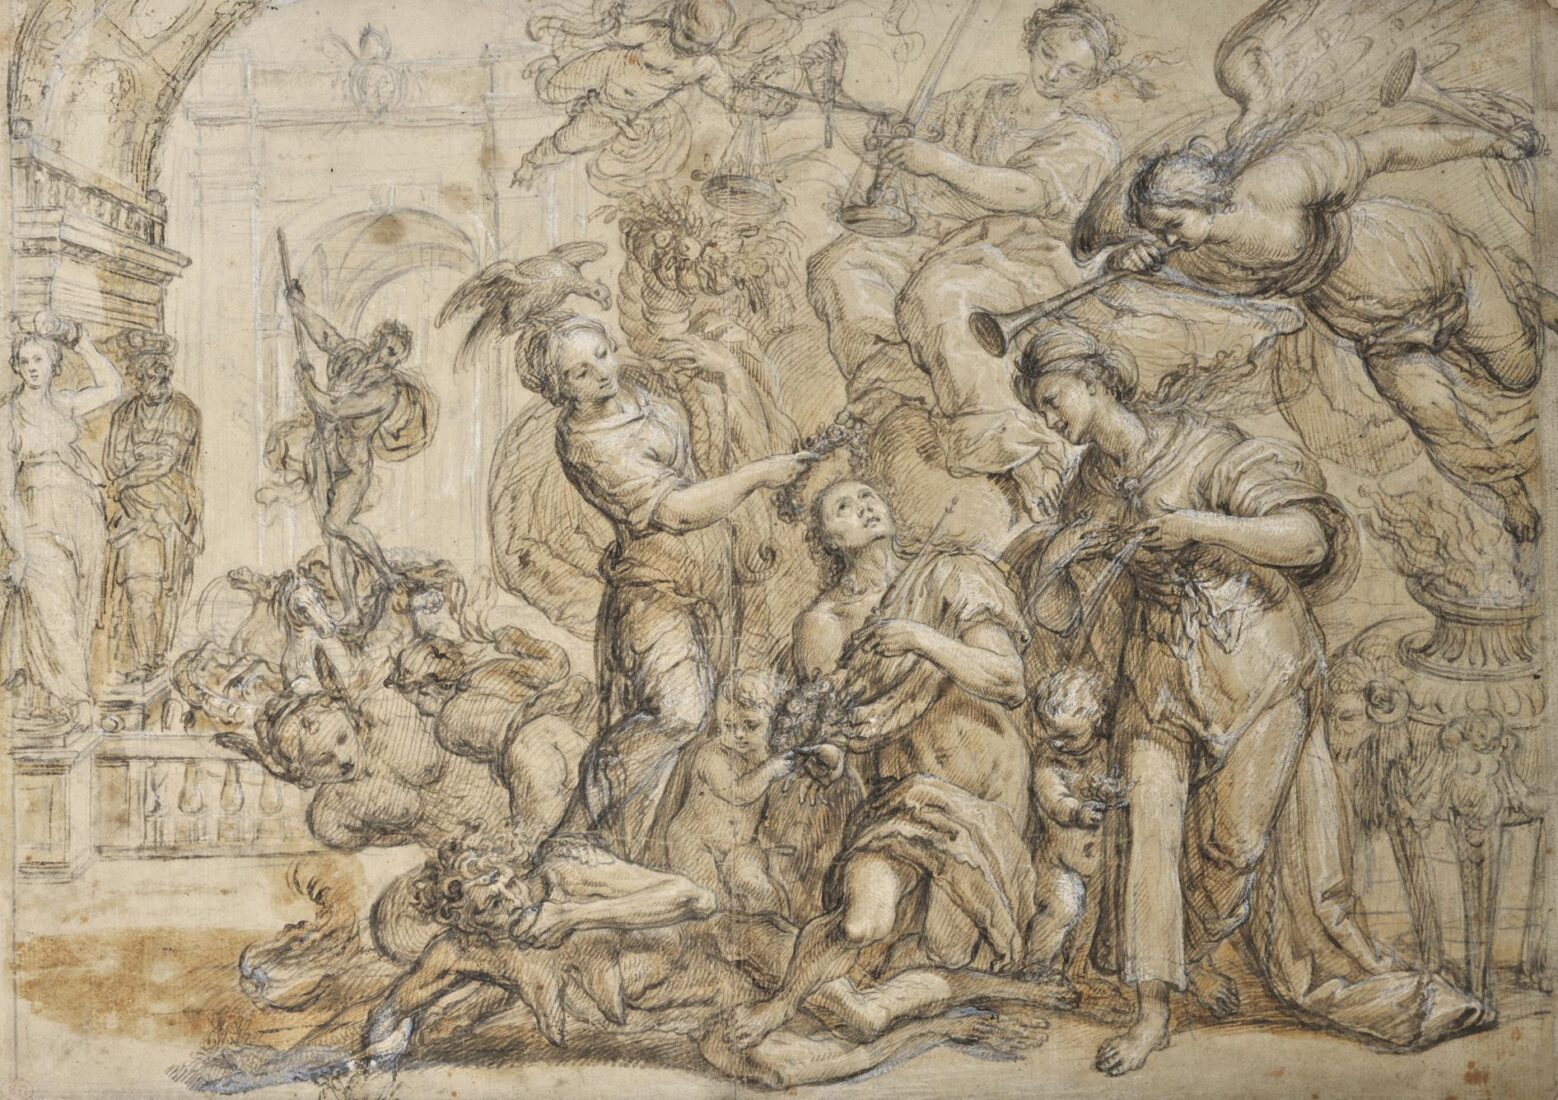 Triumph of Virtue - Continuer of Pietro da Cortona